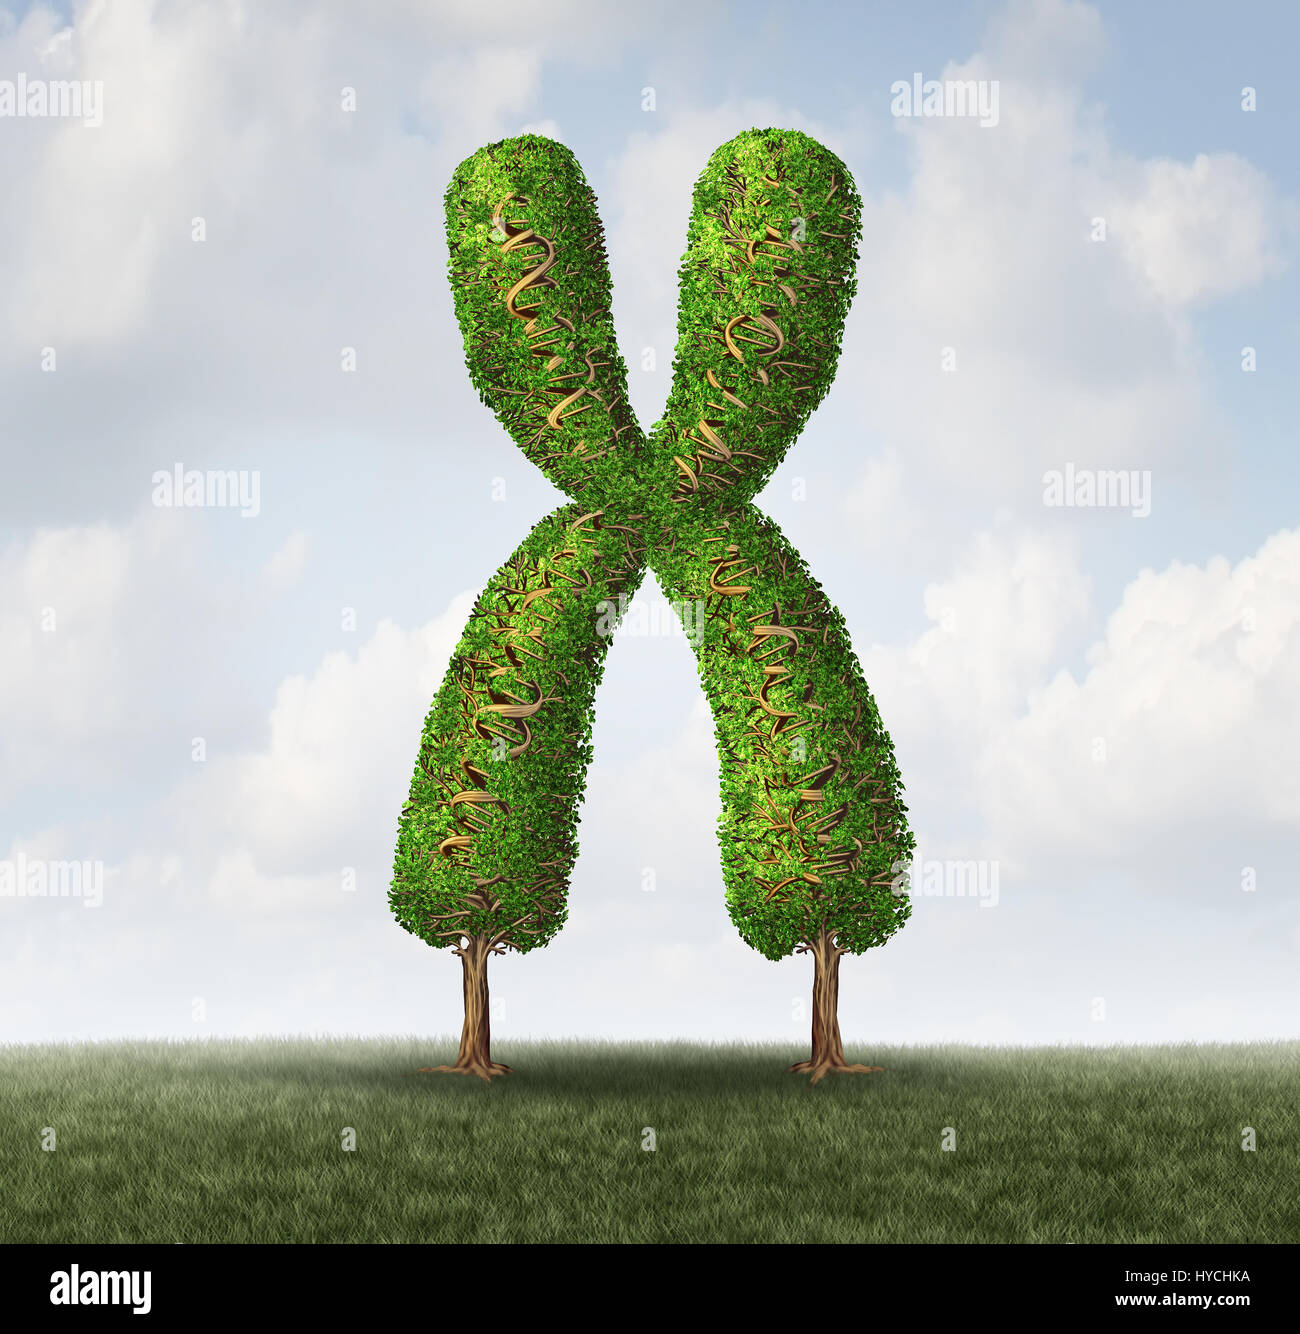 Genetischen Gesundheitskonzept als Baum geformt wie ein Chromosom mit Zweigen als DNA-Doppelhelix Strang als ein Mikrobiologie geformt. Stockfoto